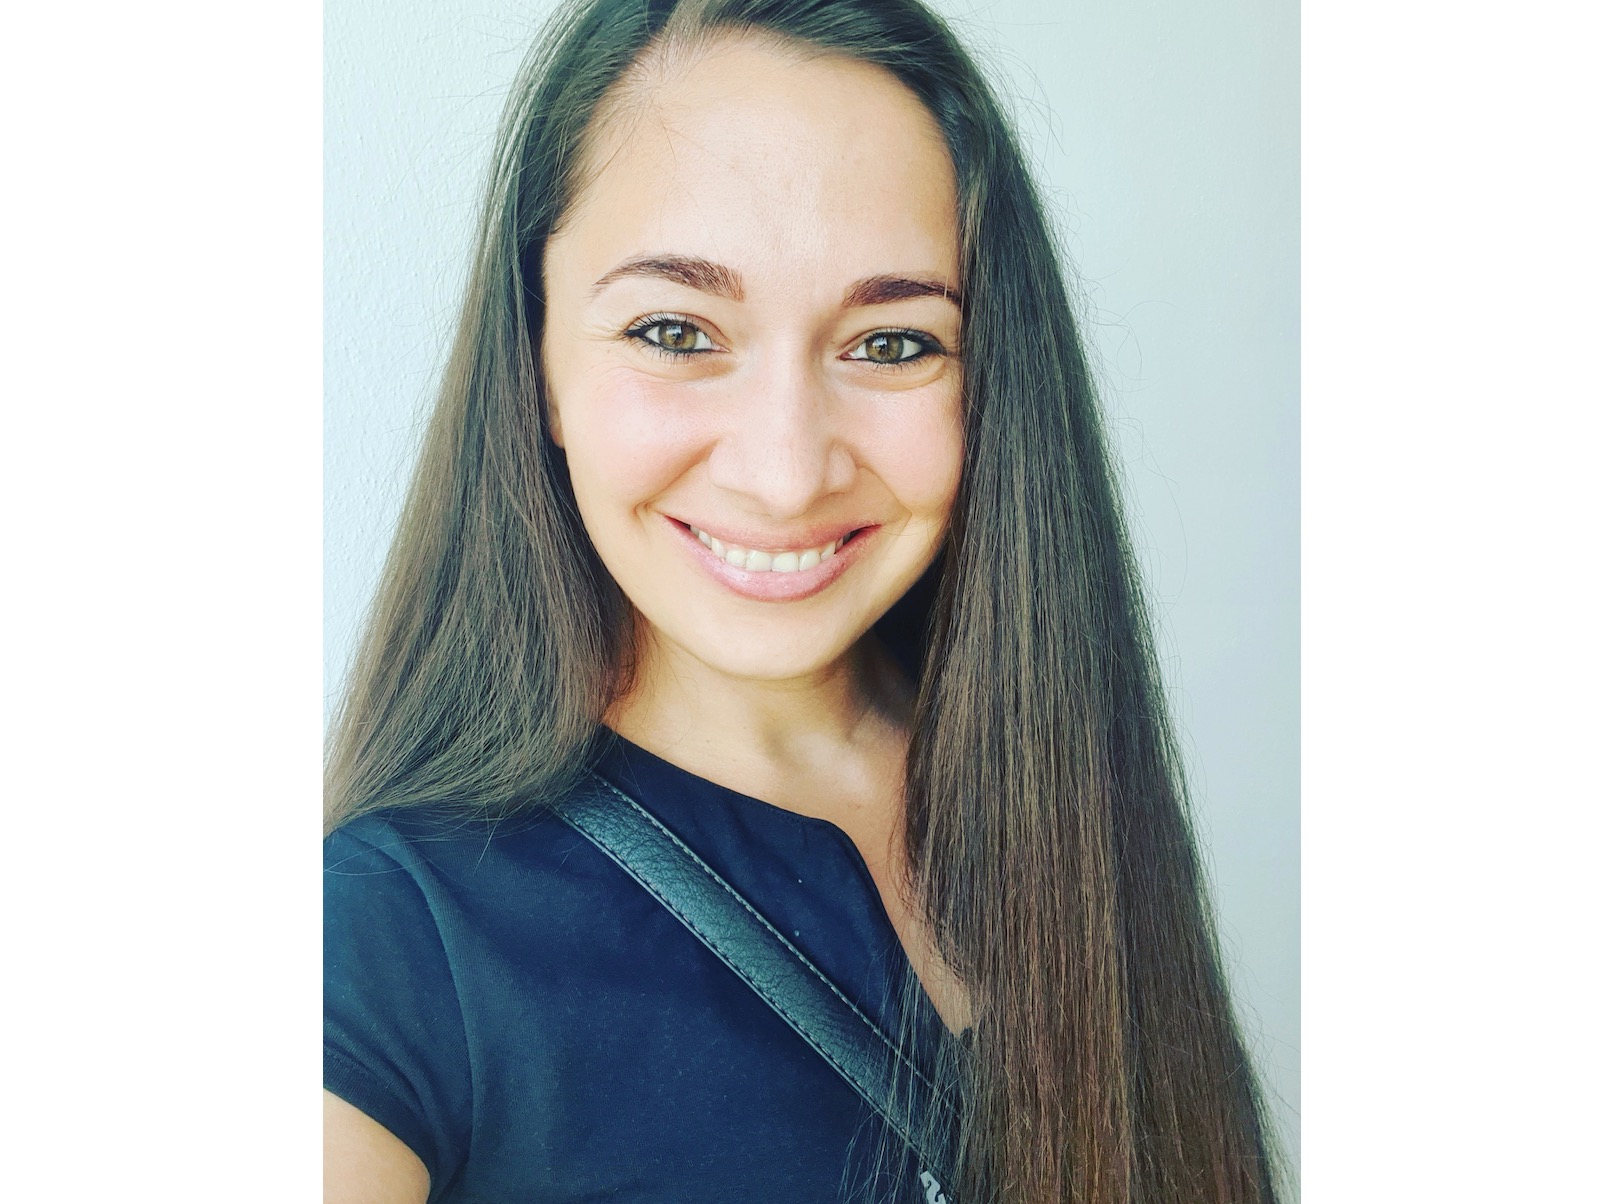 Lektorka Lýdia Hančariková: “Snažím sa zachovať si ľudskosť a autentickosť. Chcem, aby ma študenti vnímali ako osobu, ktorej záleží na ich spokojnosti v každom smere.”